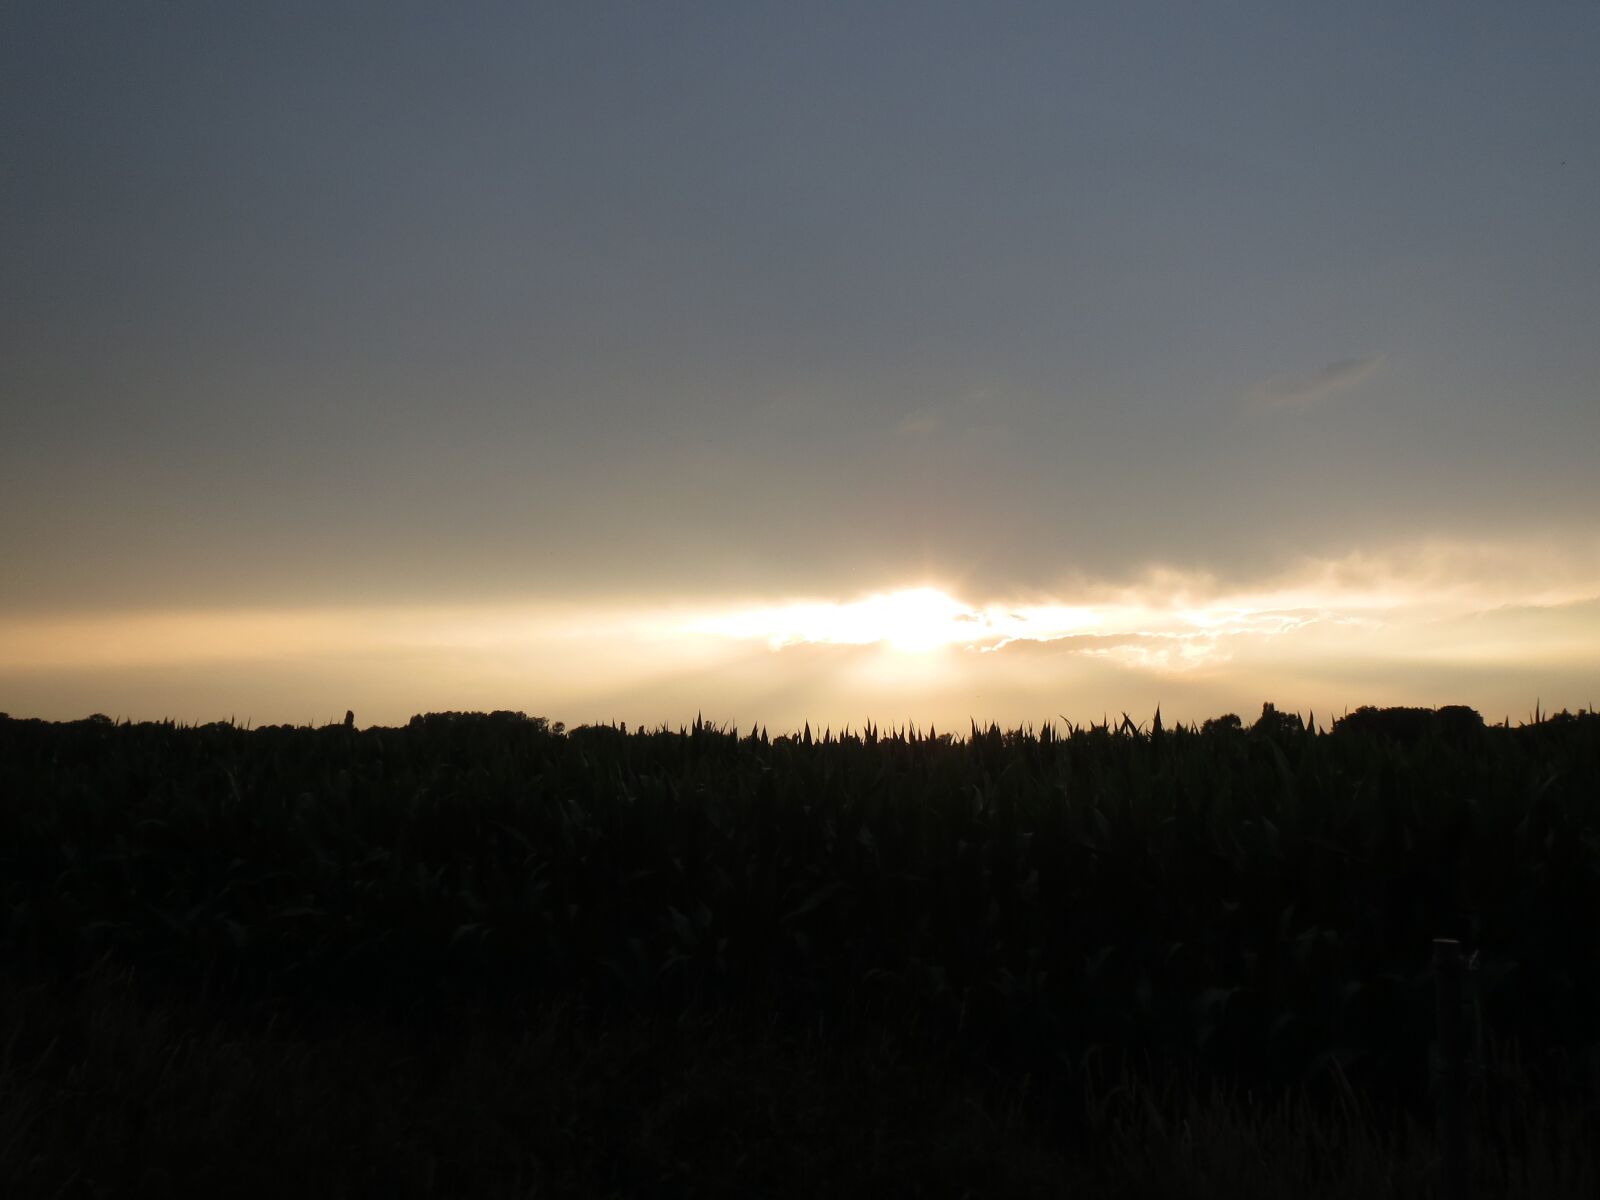 Canon PowerShot ELPH 520 HS (IXUS 500 HS / IXY 3) sample photo. Sunset, netherlands, landscape photography